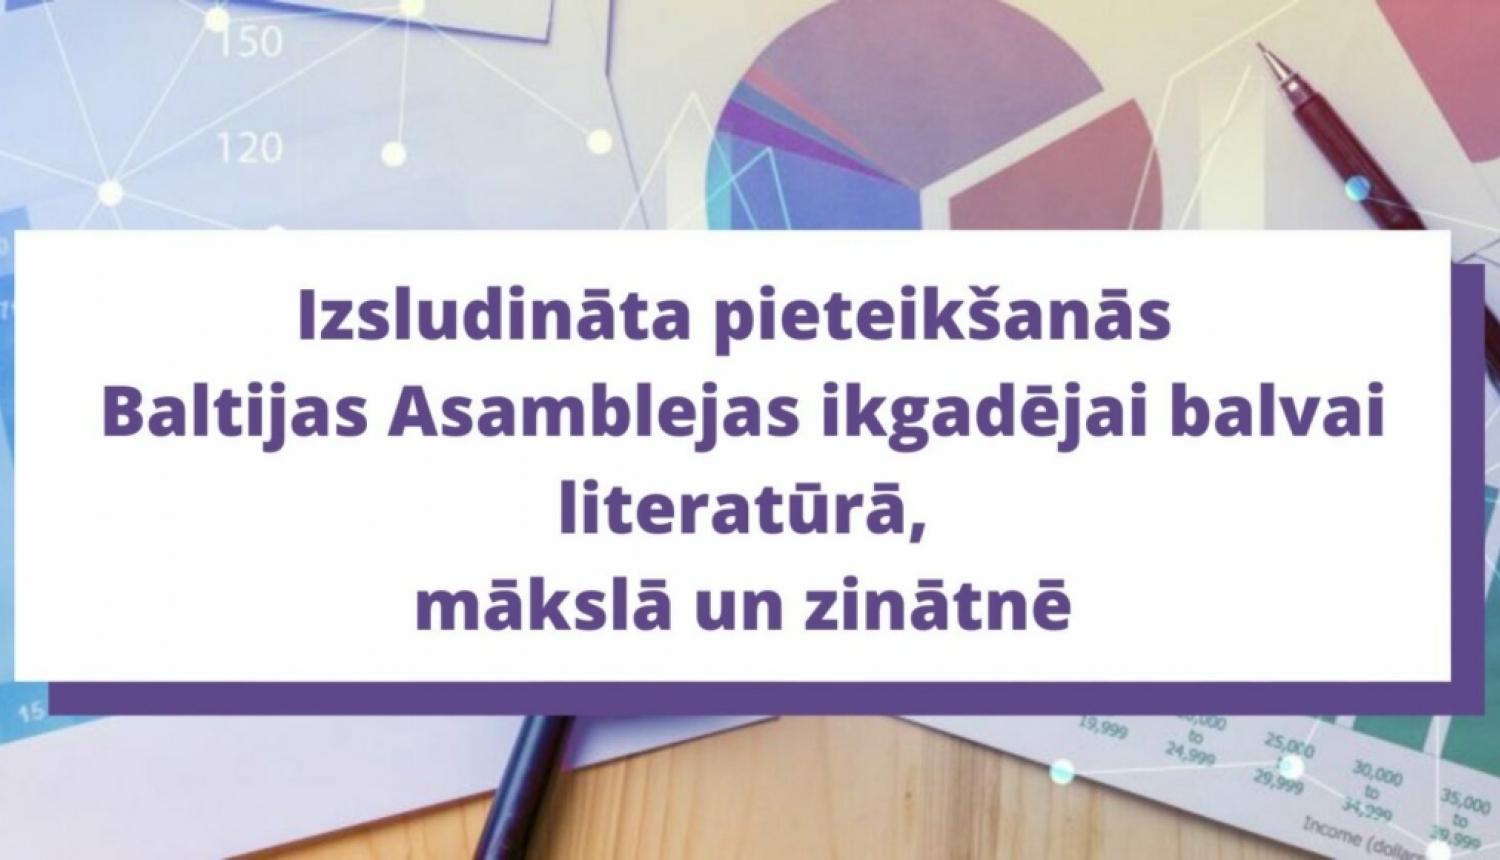 Izsludināta pieteikšanās Baltijas Asamblejas ikgadējai balvai literatūrā, mākslā un zinātnē